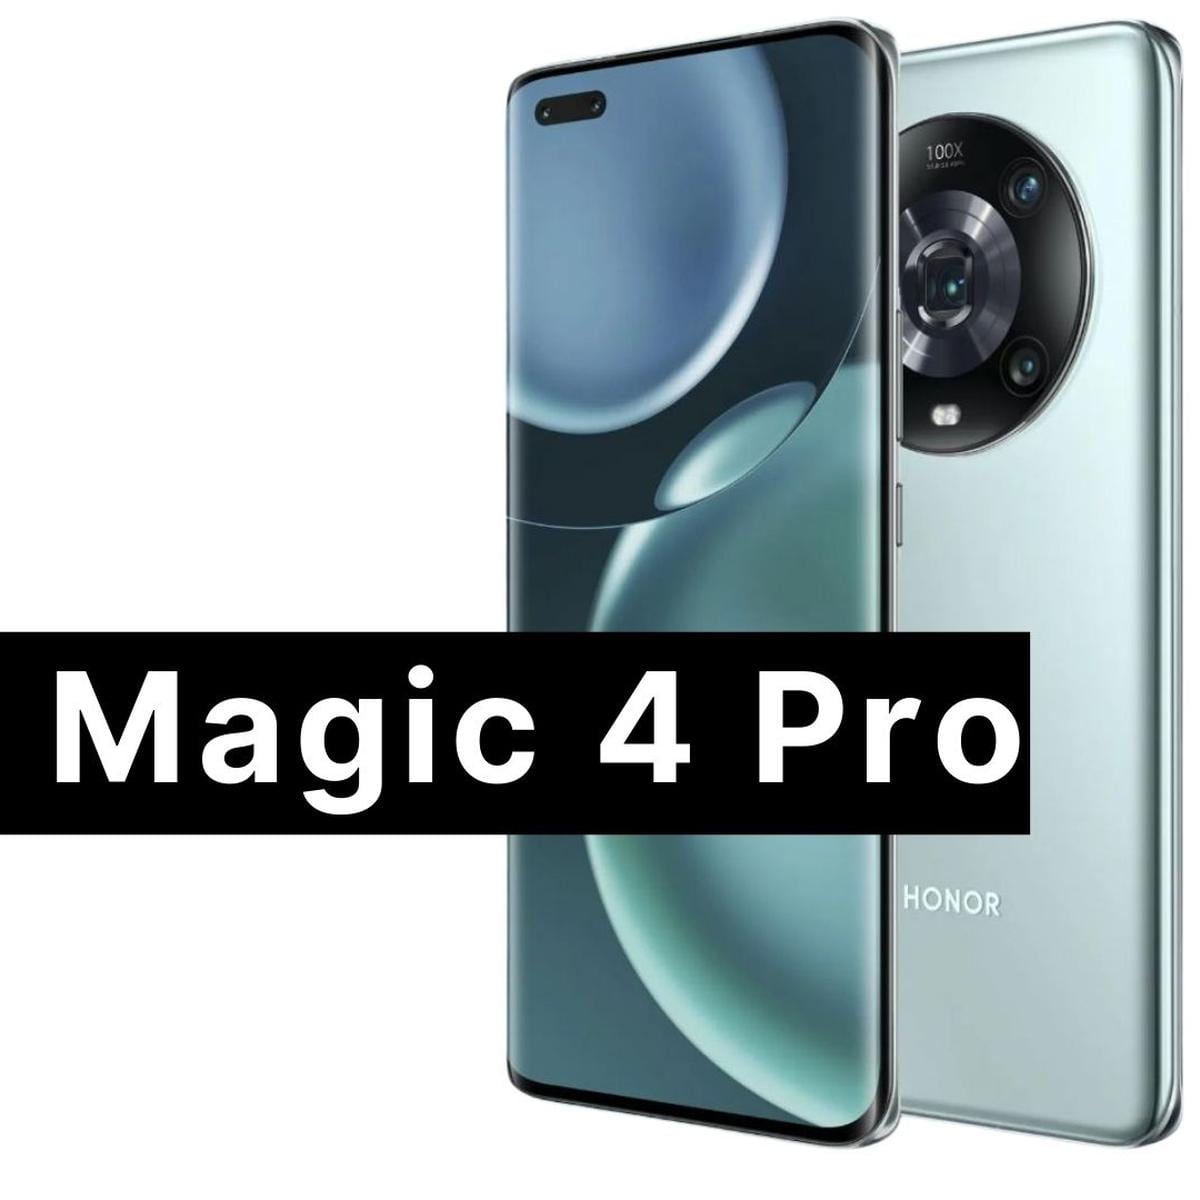 Honor Magic 4 Pro: análisis, opinión y características